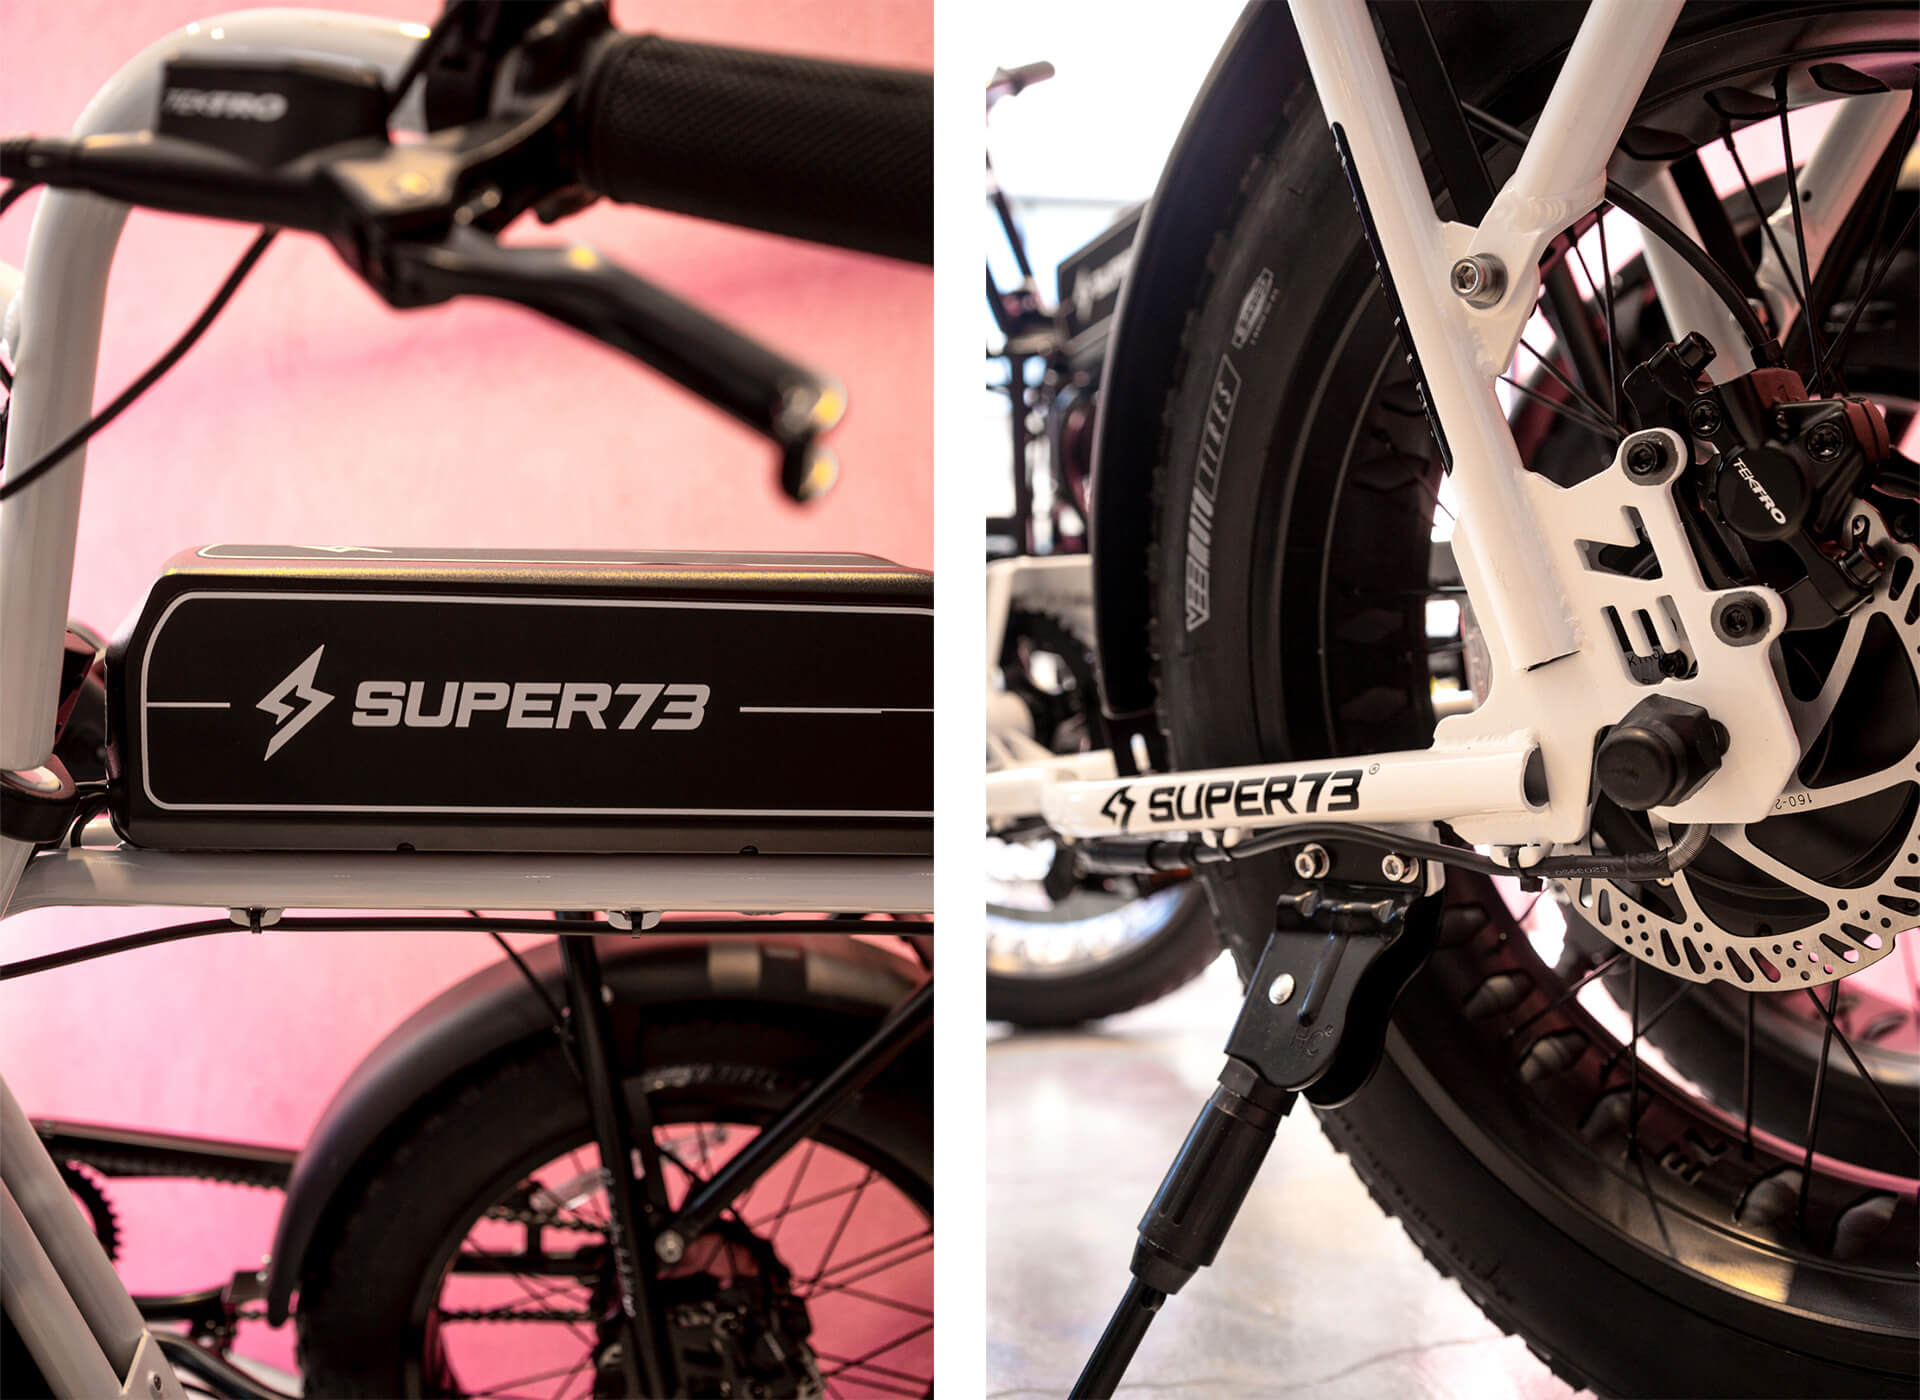 スーパー73の電動自転車のSG-1のディテール